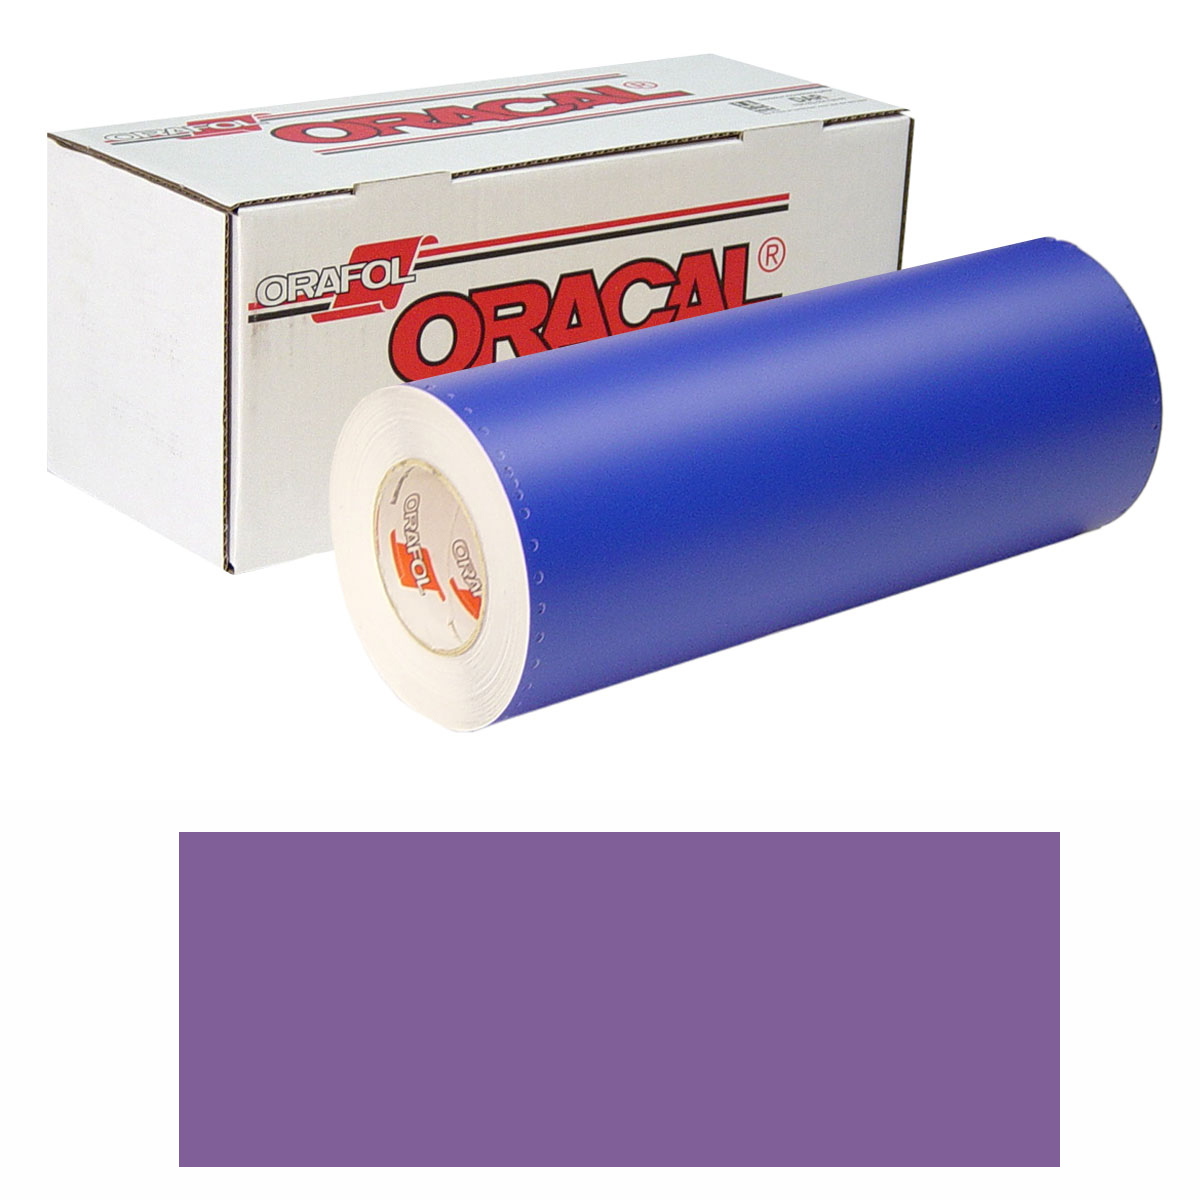 ORACAL 8300 Unp 48in X 10yd 040 Violet